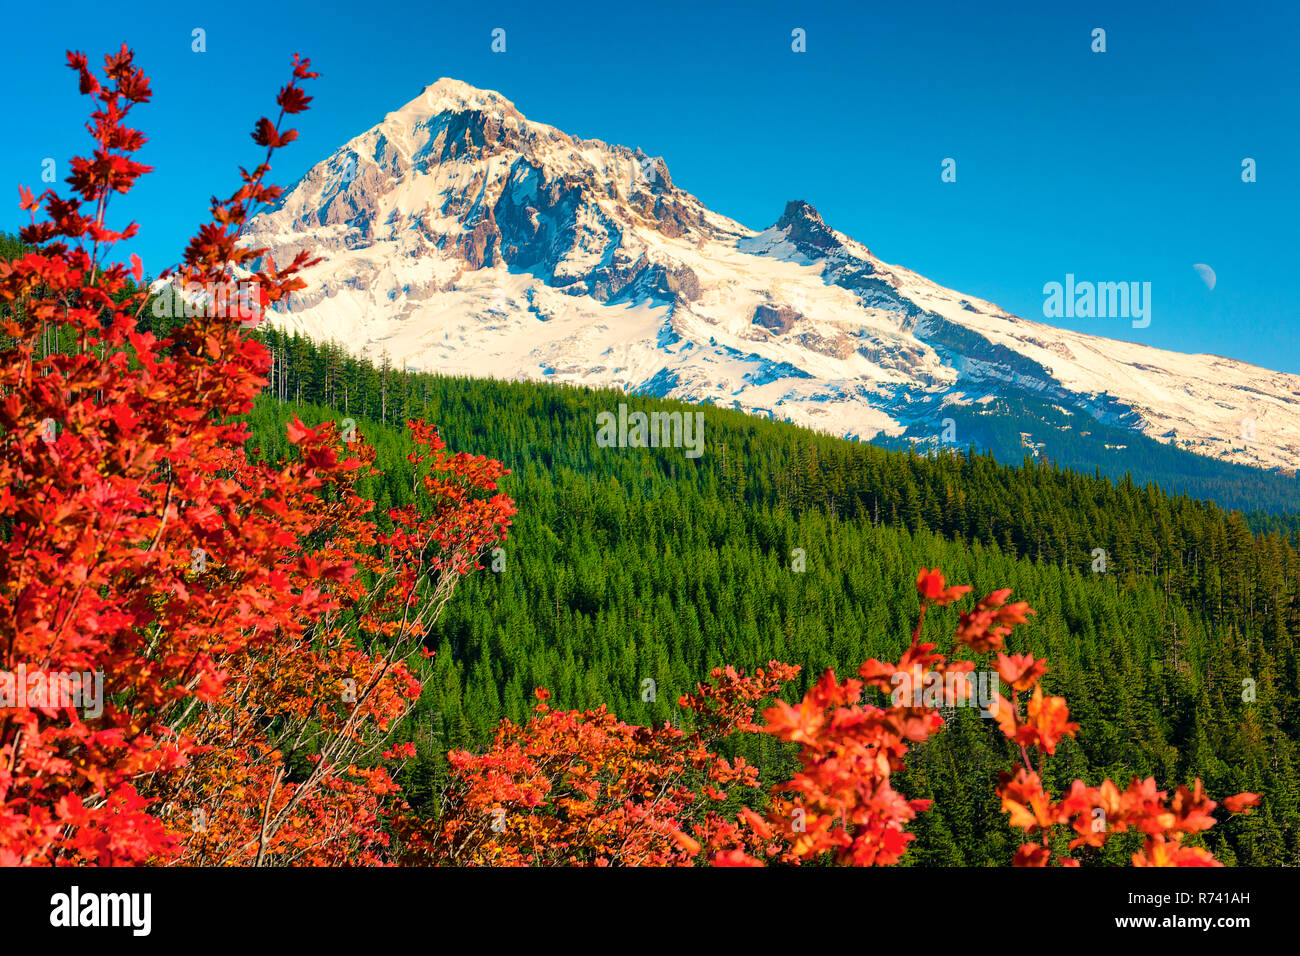 Début de la neige sur Mt. Contraste capot joliment dans ce paysage d'automne d'un écrin de forêt, ciel bleu et des couleurs de premier plan automne lumineux arbuste. rsh Banque D'Images